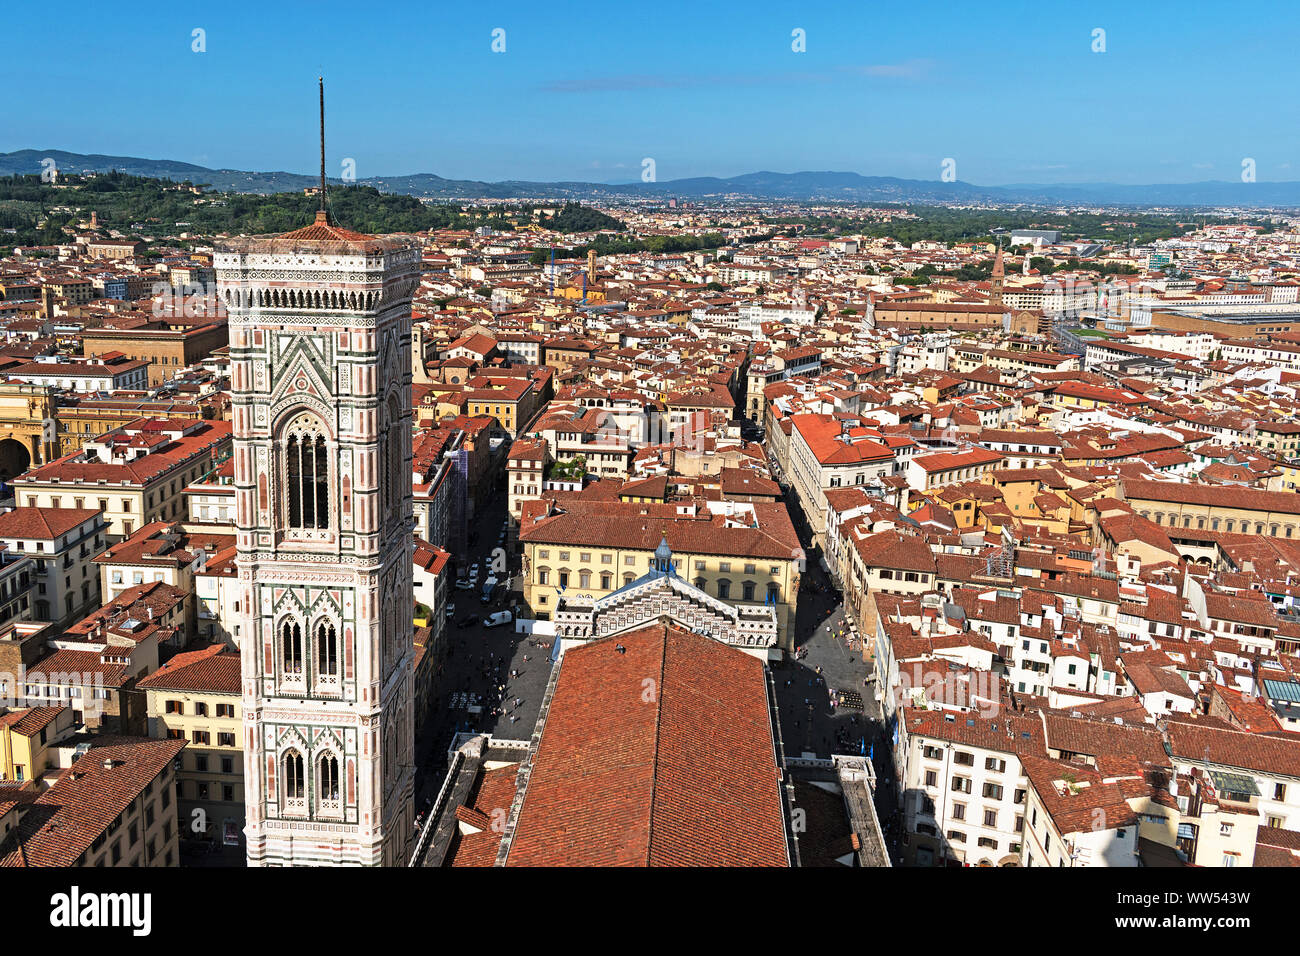 Le campanile de Giotto Bell Tower et les toits de la ville de flornece vue depuis le dessus du dôme sur la cathédrale, florence, toscane, italie. Banque D'Images